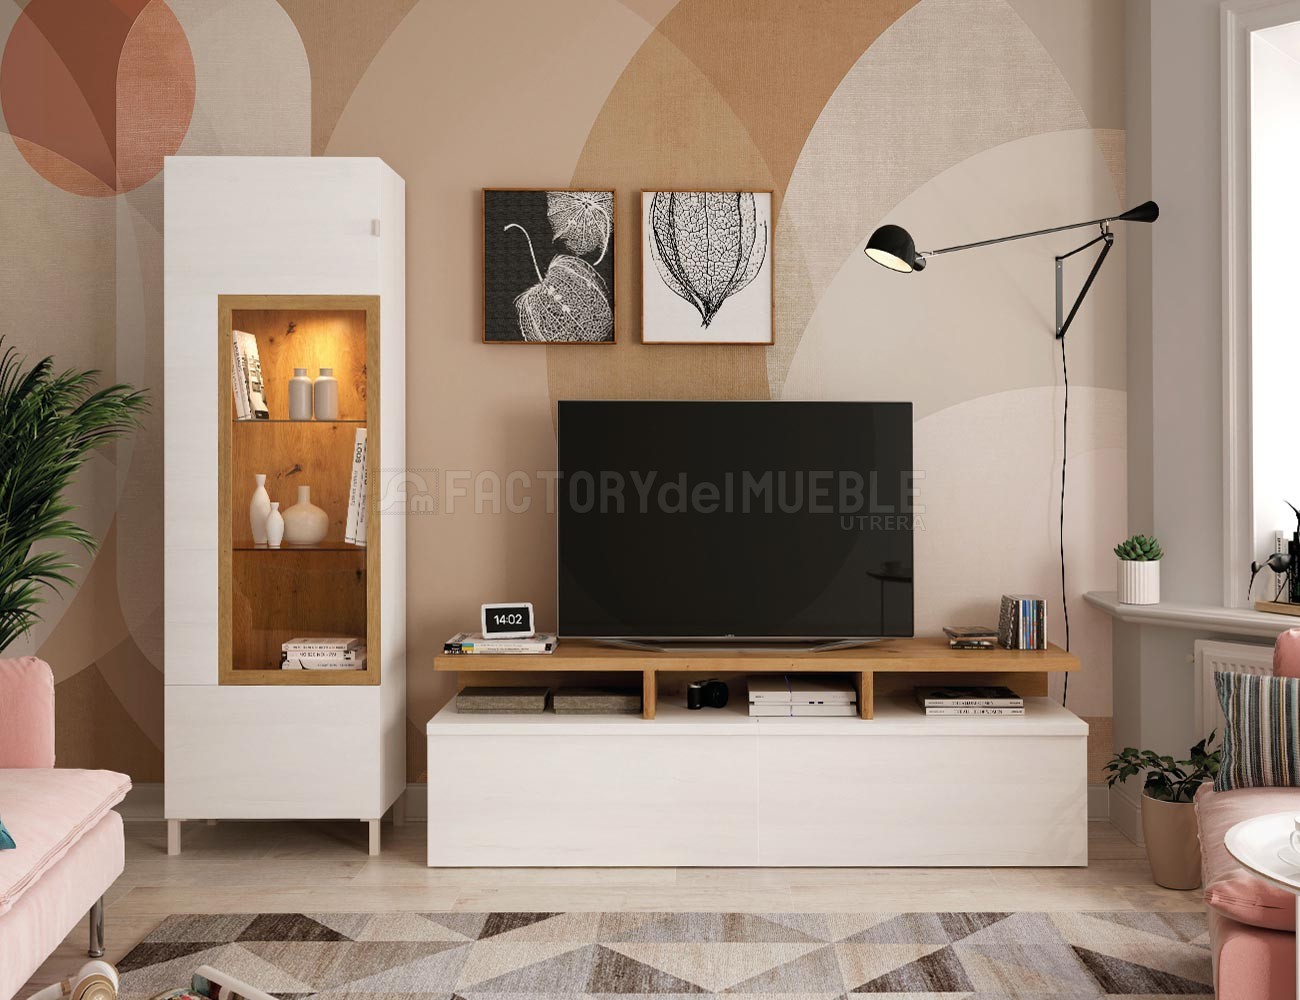 Salones de diseño actual y funcional fabricados por muebles ramis